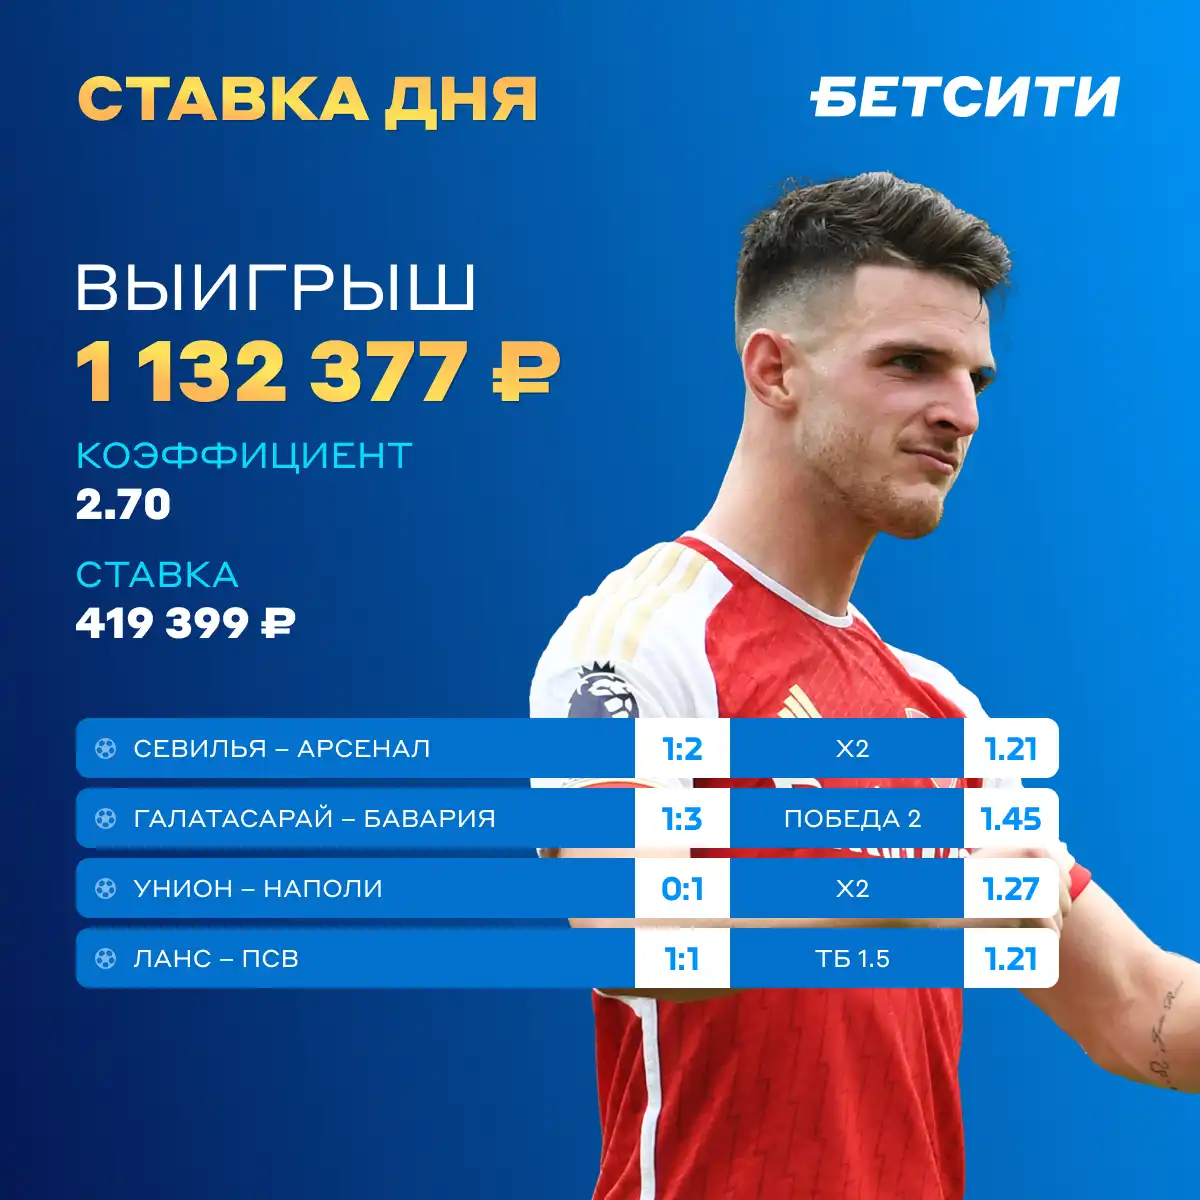 Игрок БЕТСИТИ заработал 1.13 млн рублей с экспресса на матчи Лиги чемпионов